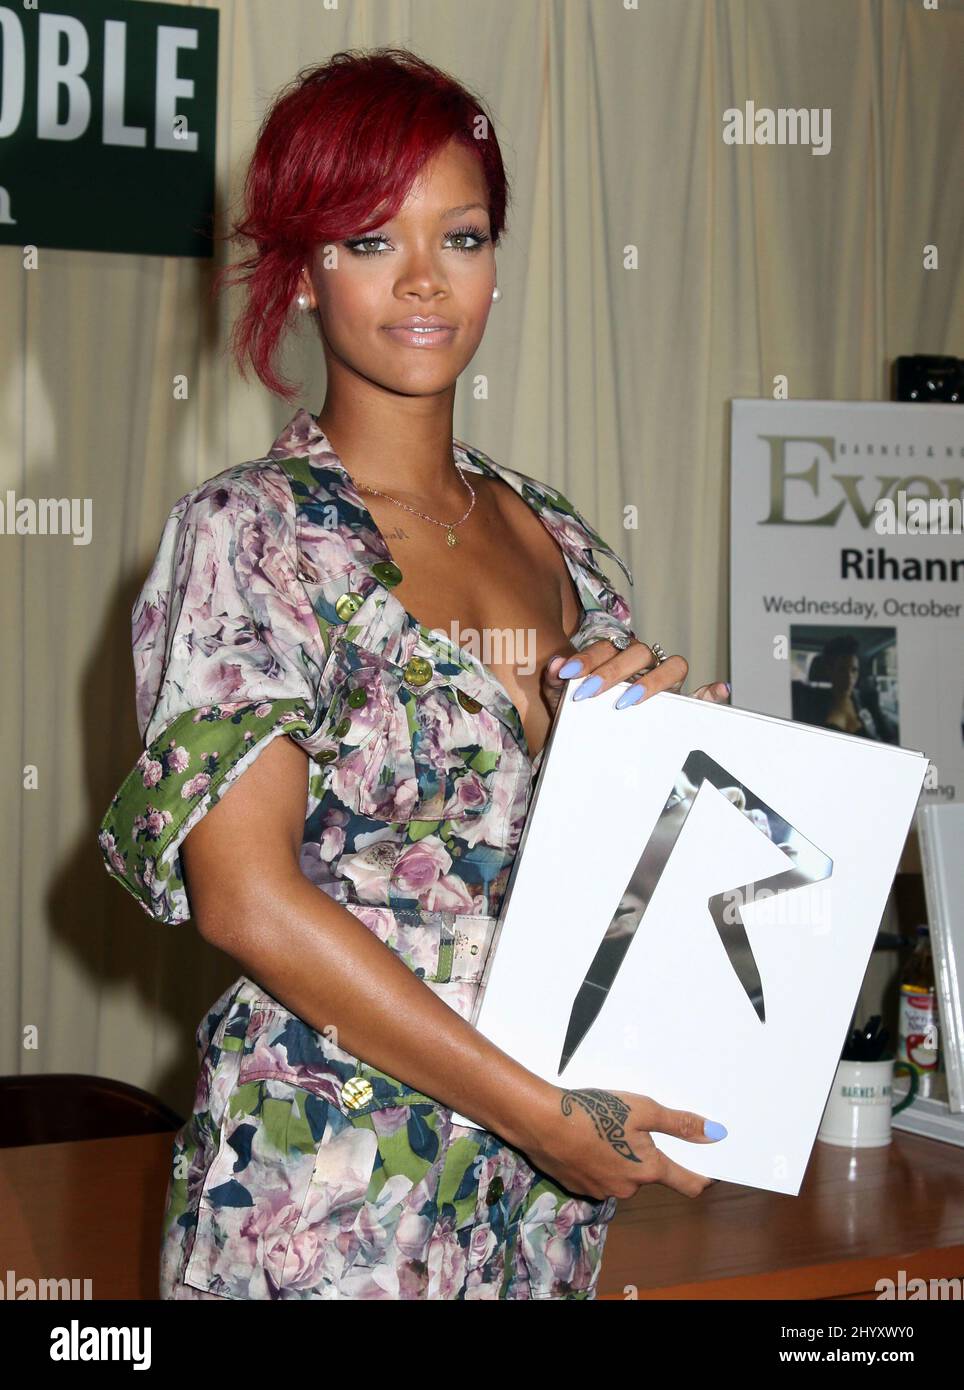 Rihanna signe des copies de son nouveau livre 'Rihanna: The Last Girl on Earth' au magasin Barnes and Noble sur 5th Avenue à New York, Etats-Unis. Banque D'Images